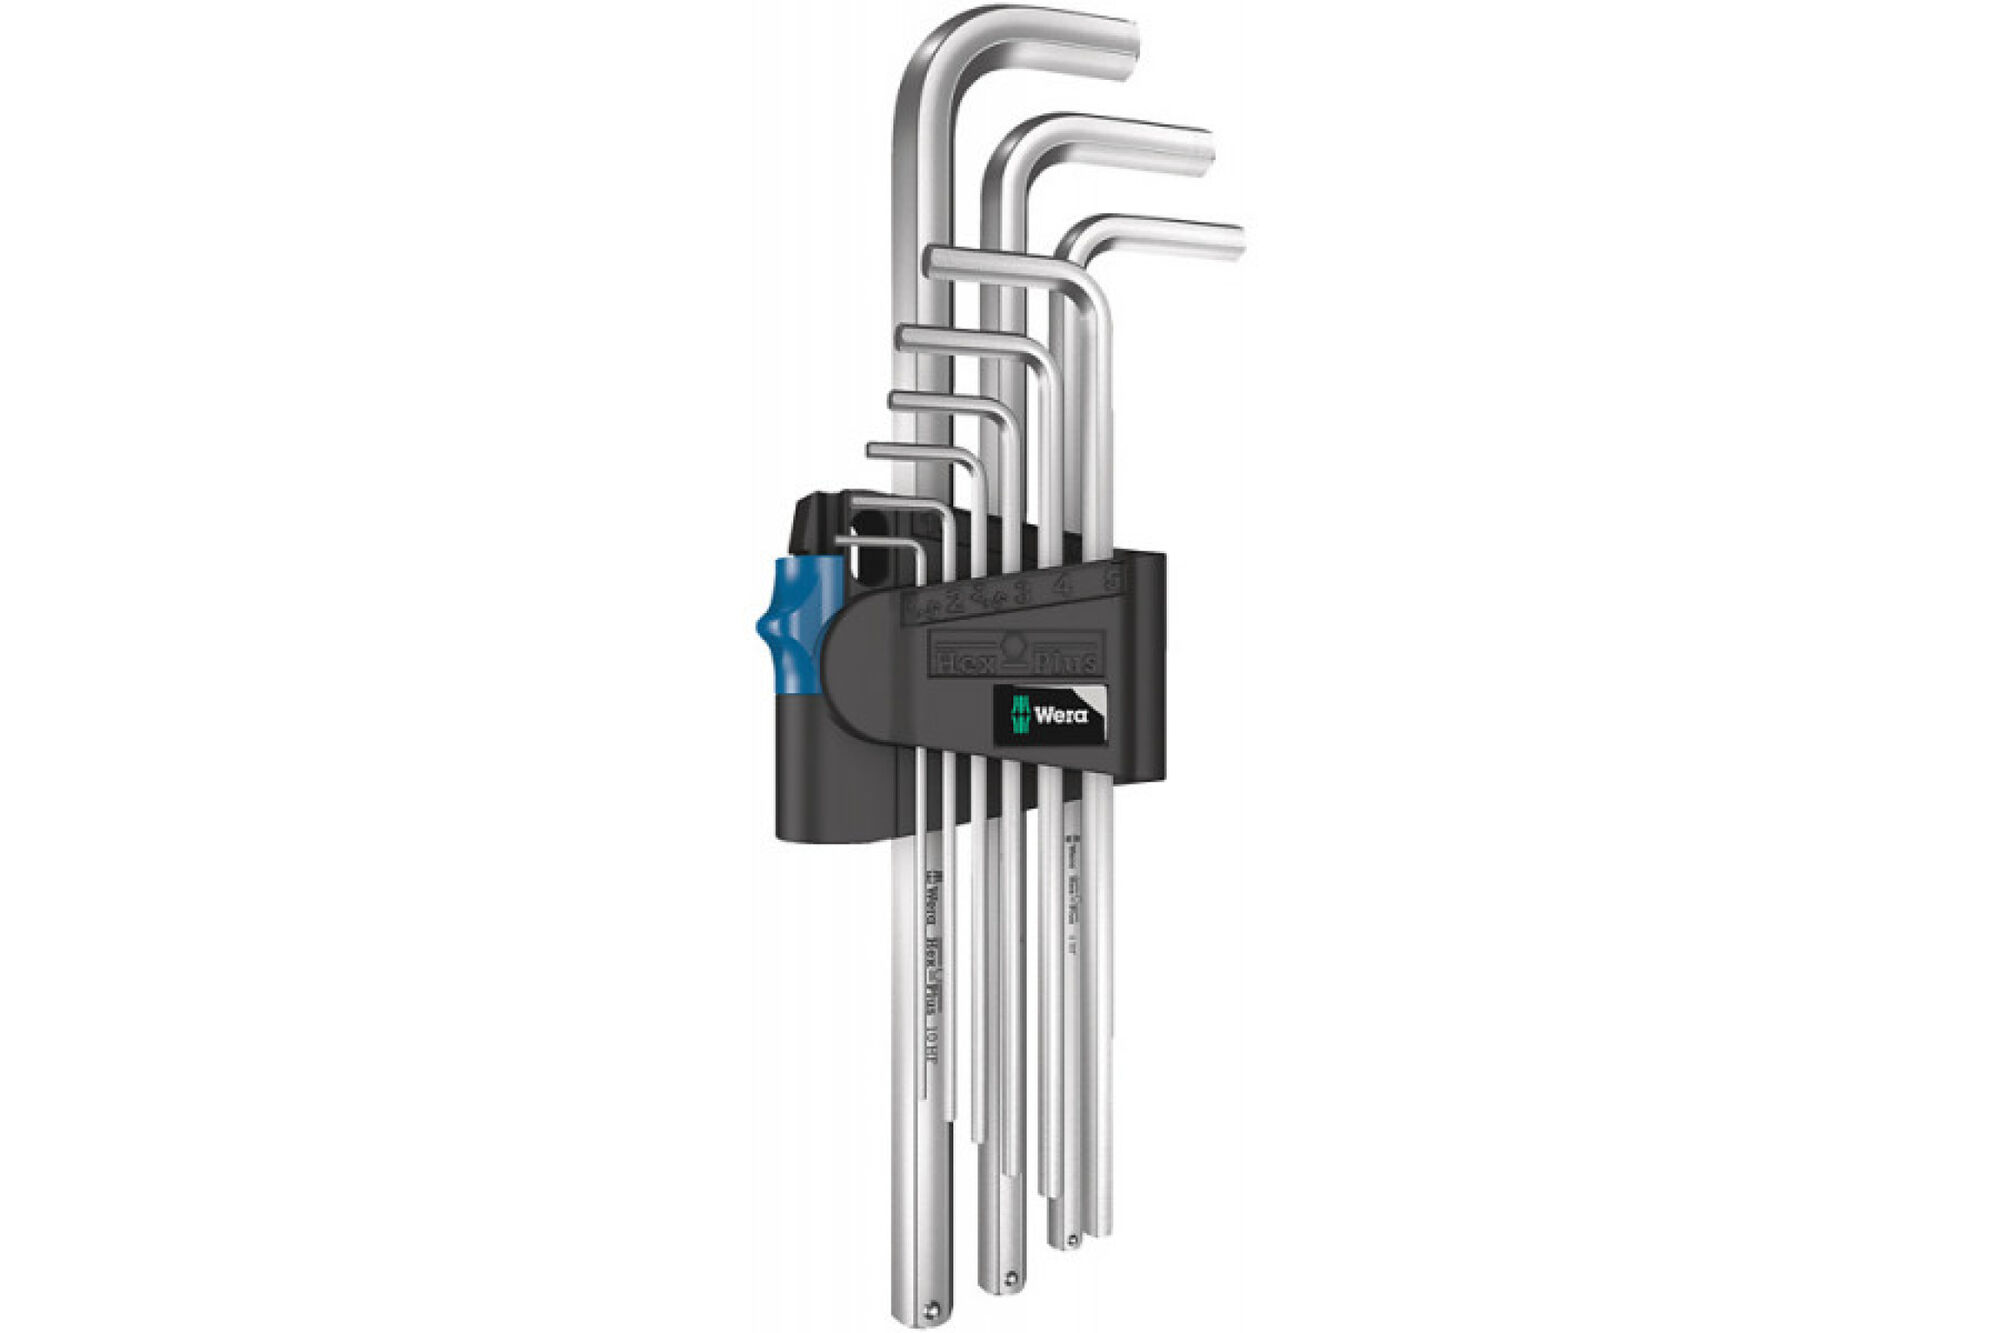 Набор Г-образных ключей WERA 950/9 L Hex-Plus HF 1, 9 пр., 1.5x10 мм, хром, с фикс. функцией WE-022130